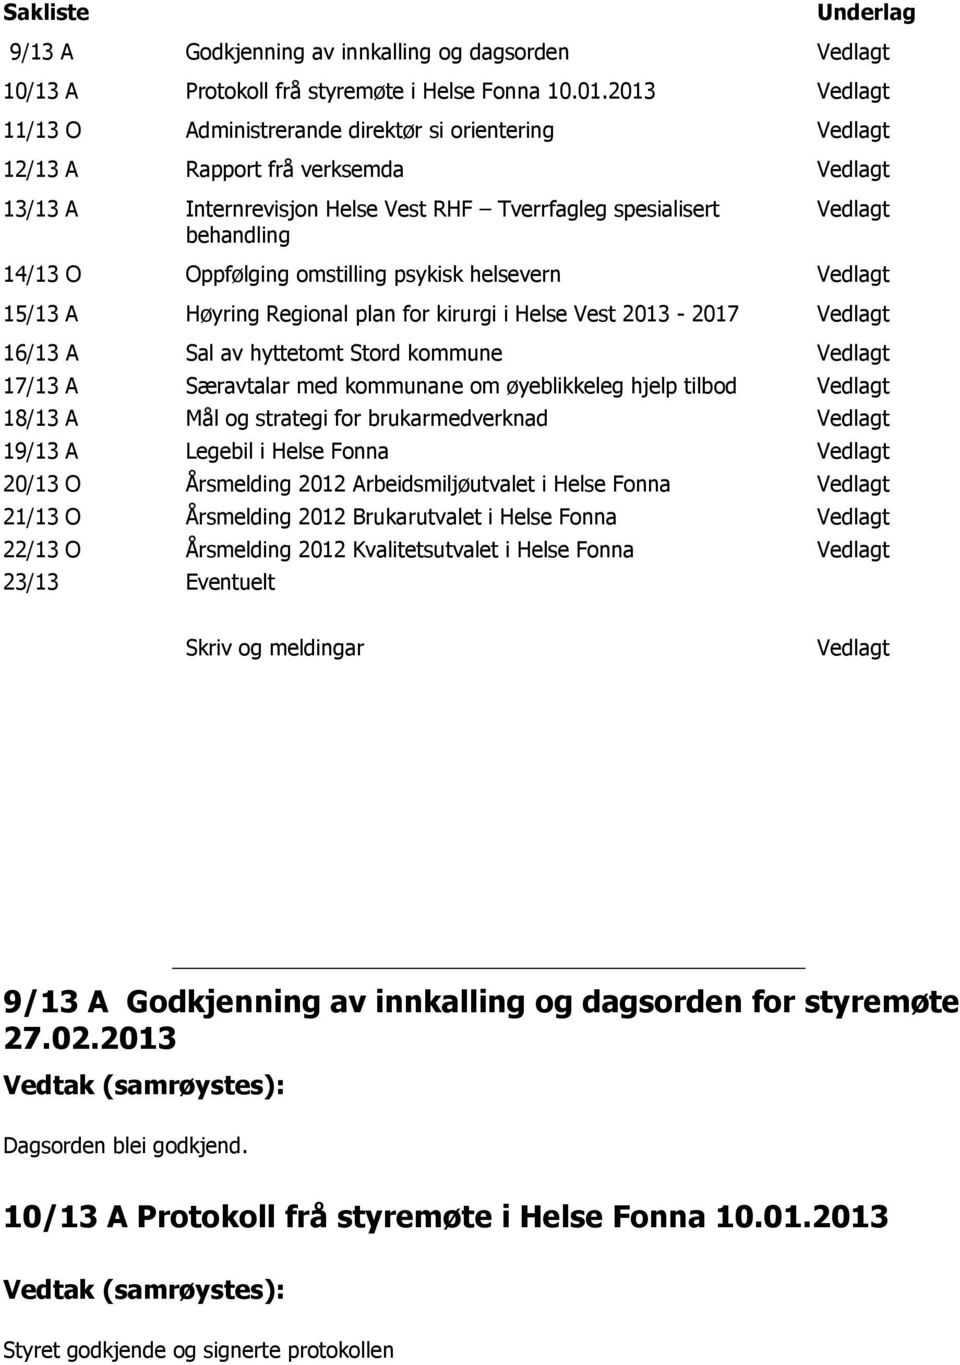 Oppfølging omstilling psykisk helsevern Vedlagt 15/13 A Høyring Regional plan for kirurgi i Helse Vest 2013-2017 Vedlagt 16/13 A 17/13 A 18/13 A 19/13 A 20/13 O 21/13 O 22/13 O 23/13 Sal av hyttetomt